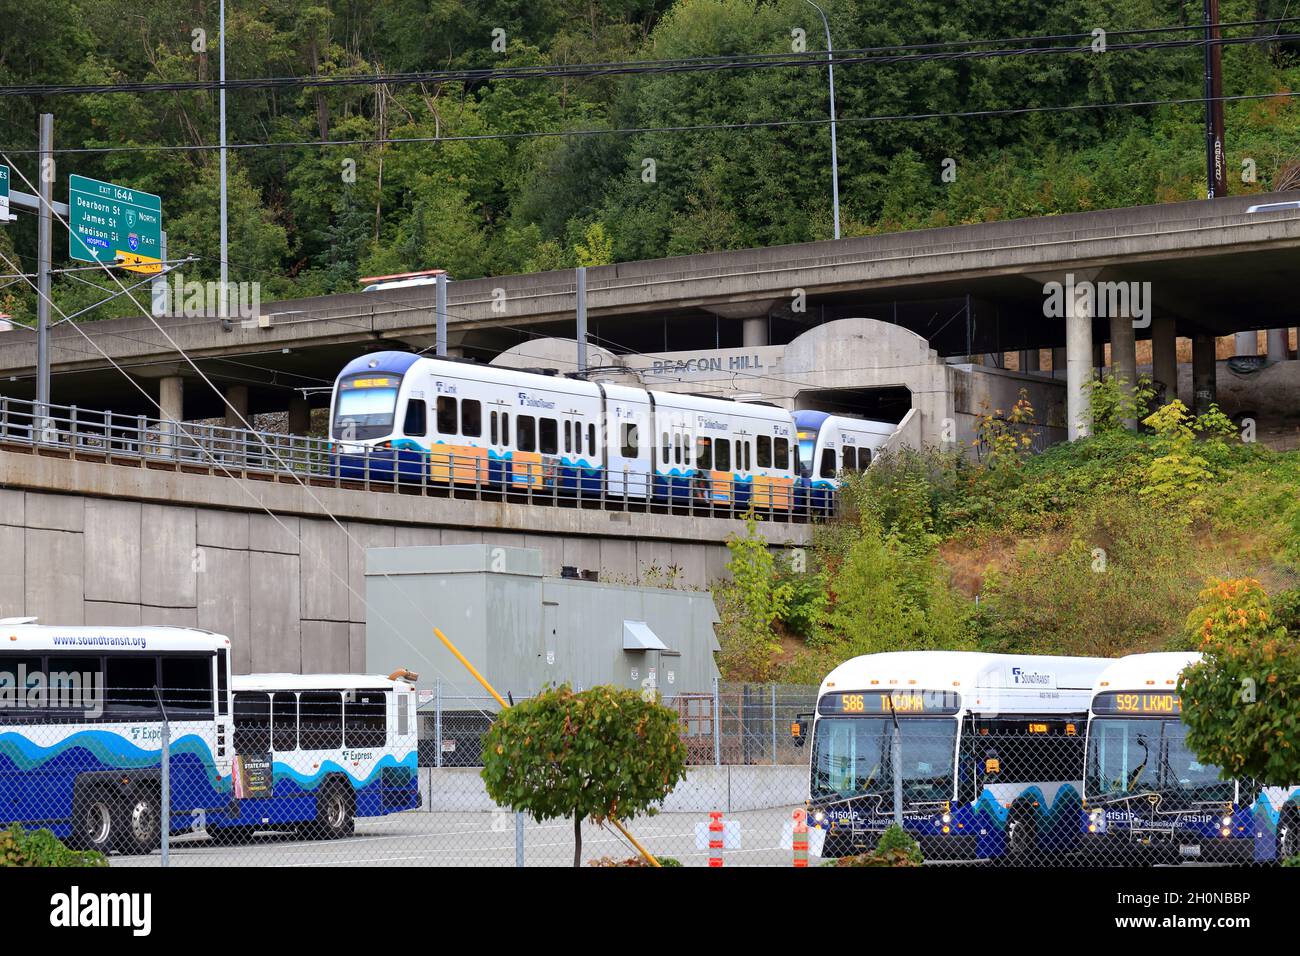 Un train Sound Transit Link entre dans le tunnel Beacon Hill à Seattle Sodo avec l'autoroute Interstate 5 au-dessus et un parking pour autobus de banlieue au-dessous. Banque D'Images